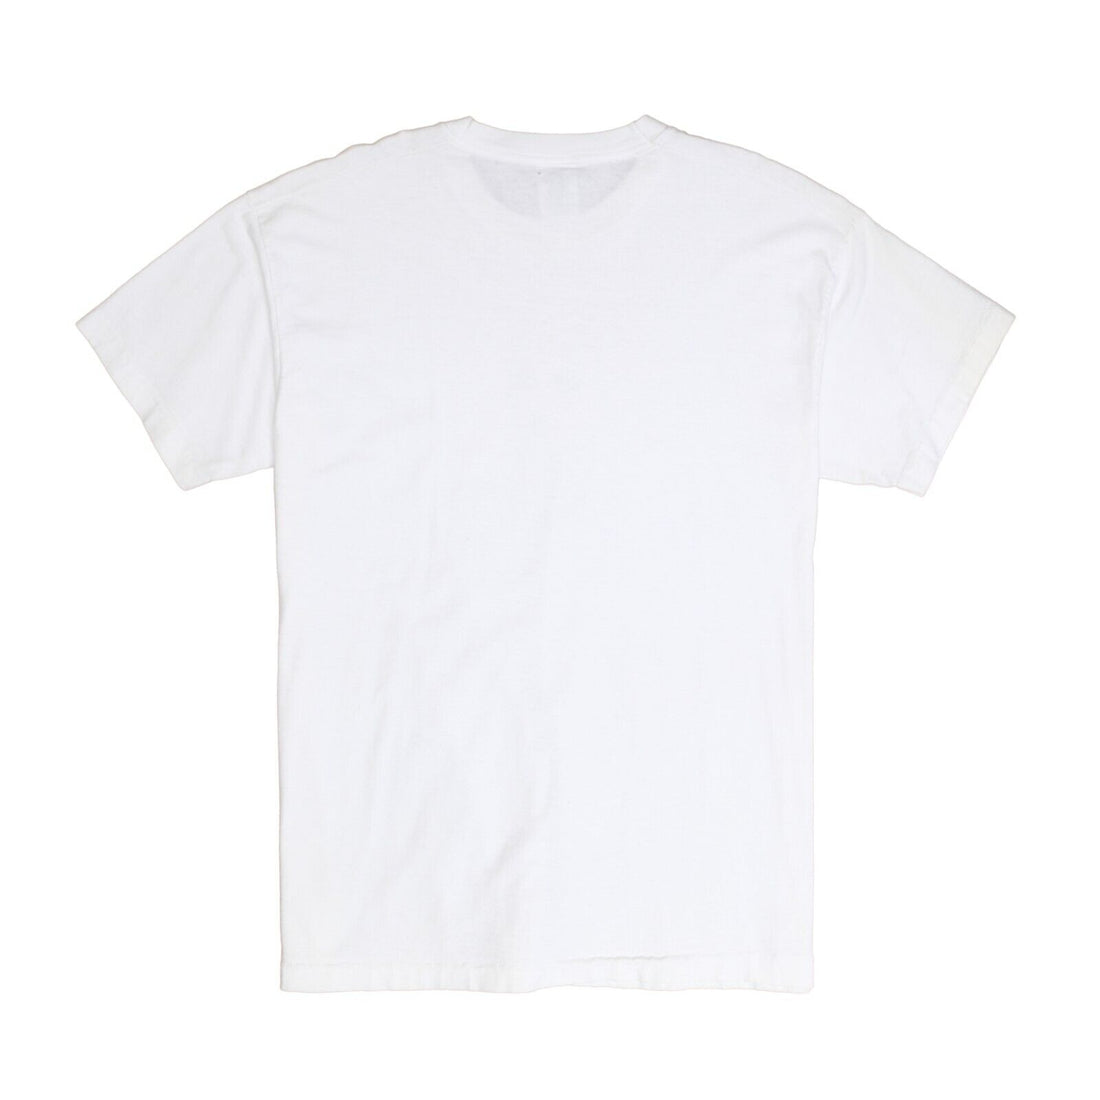 Vintage Georges Seurat Portrait T-Shirt Size XL White Art Tee 1997 90s